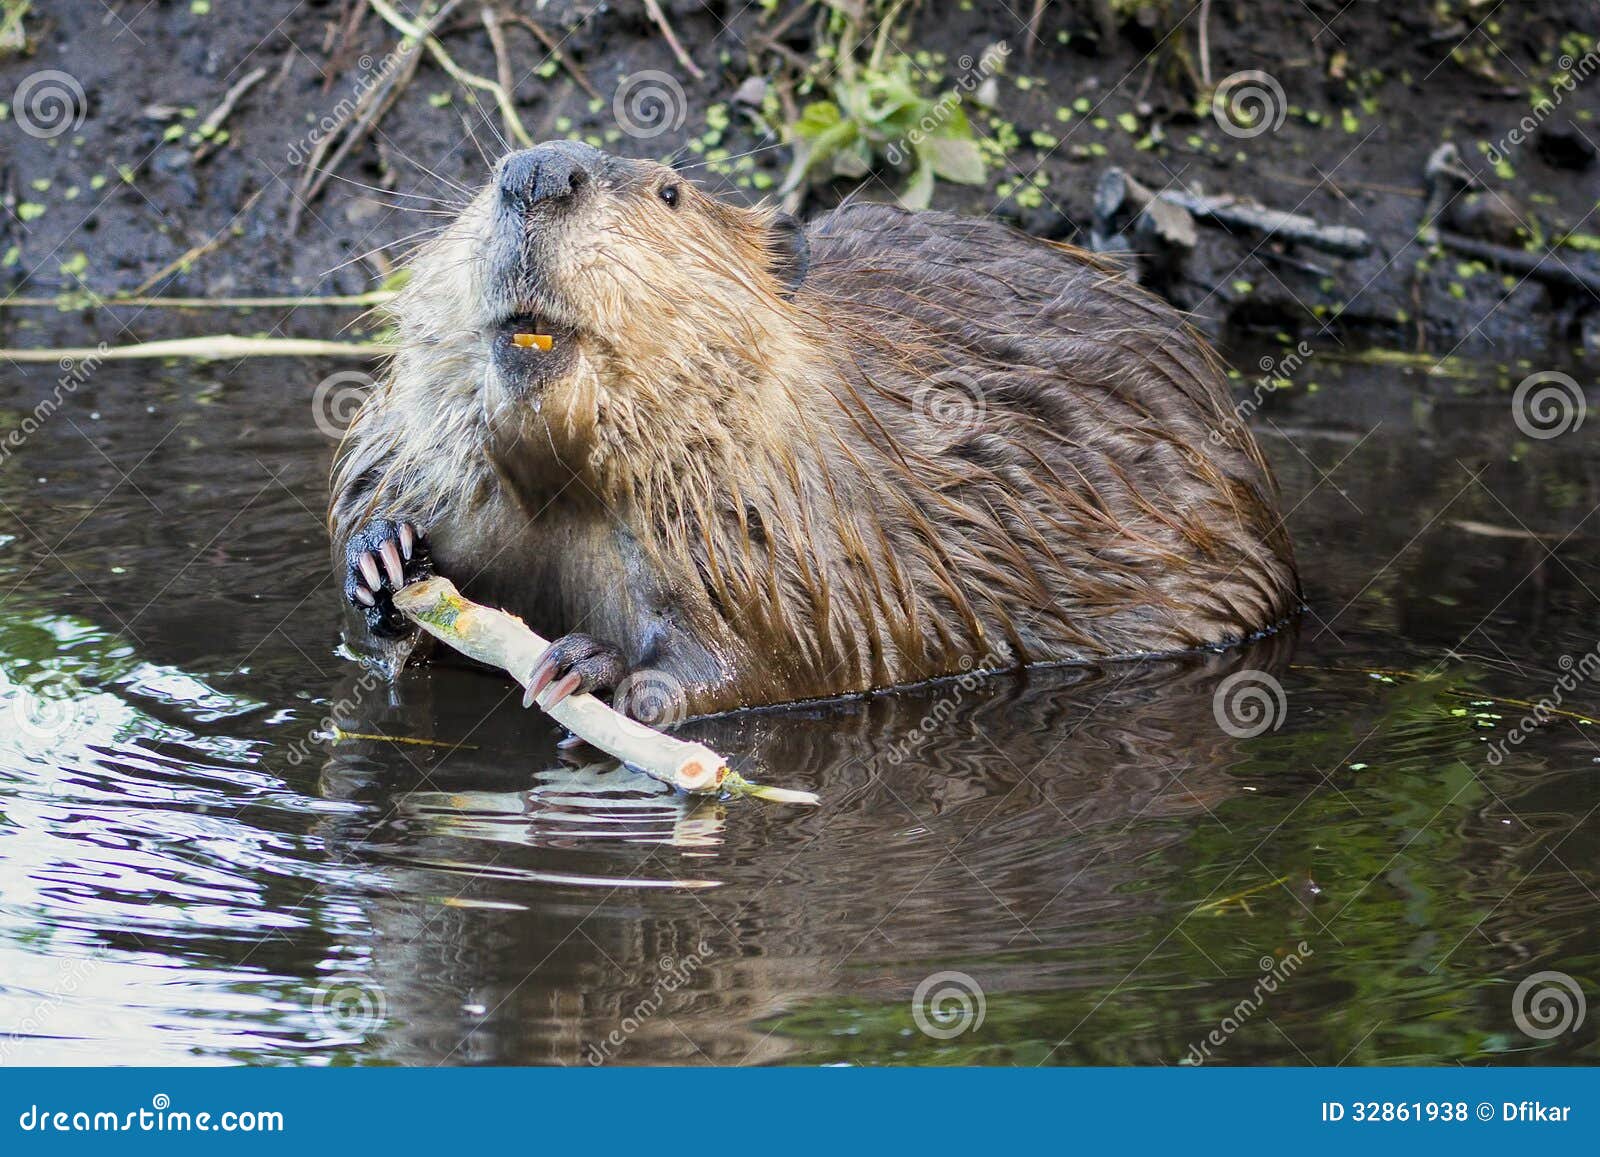 beaver in the tetons